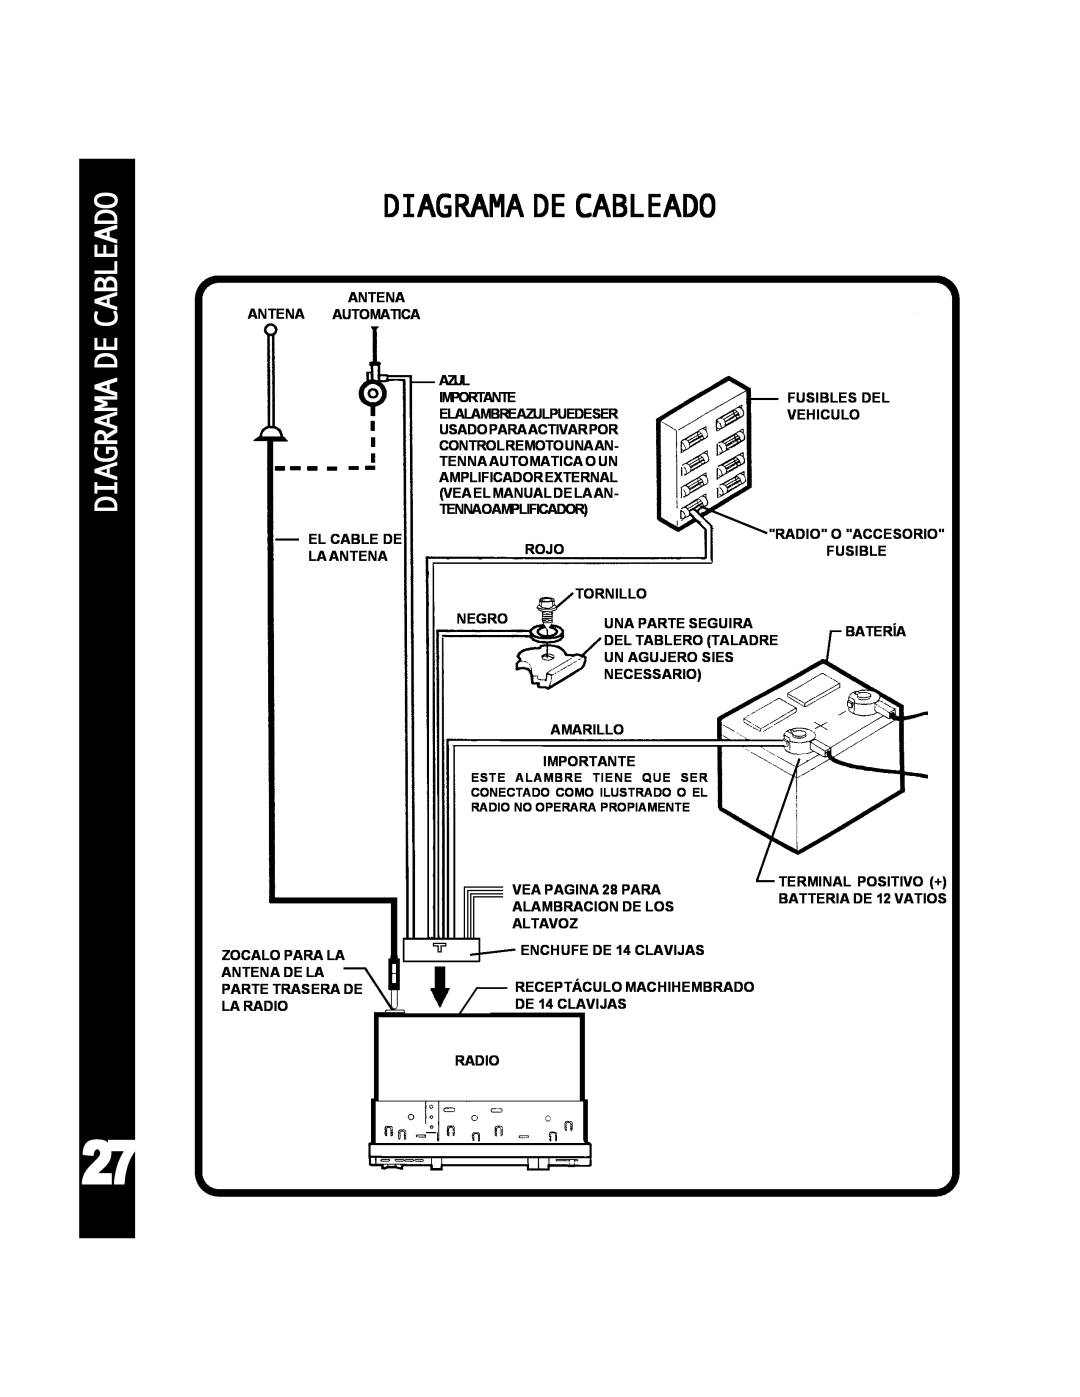 Audiovox ACD-25 manual Diagrama De Cableado 